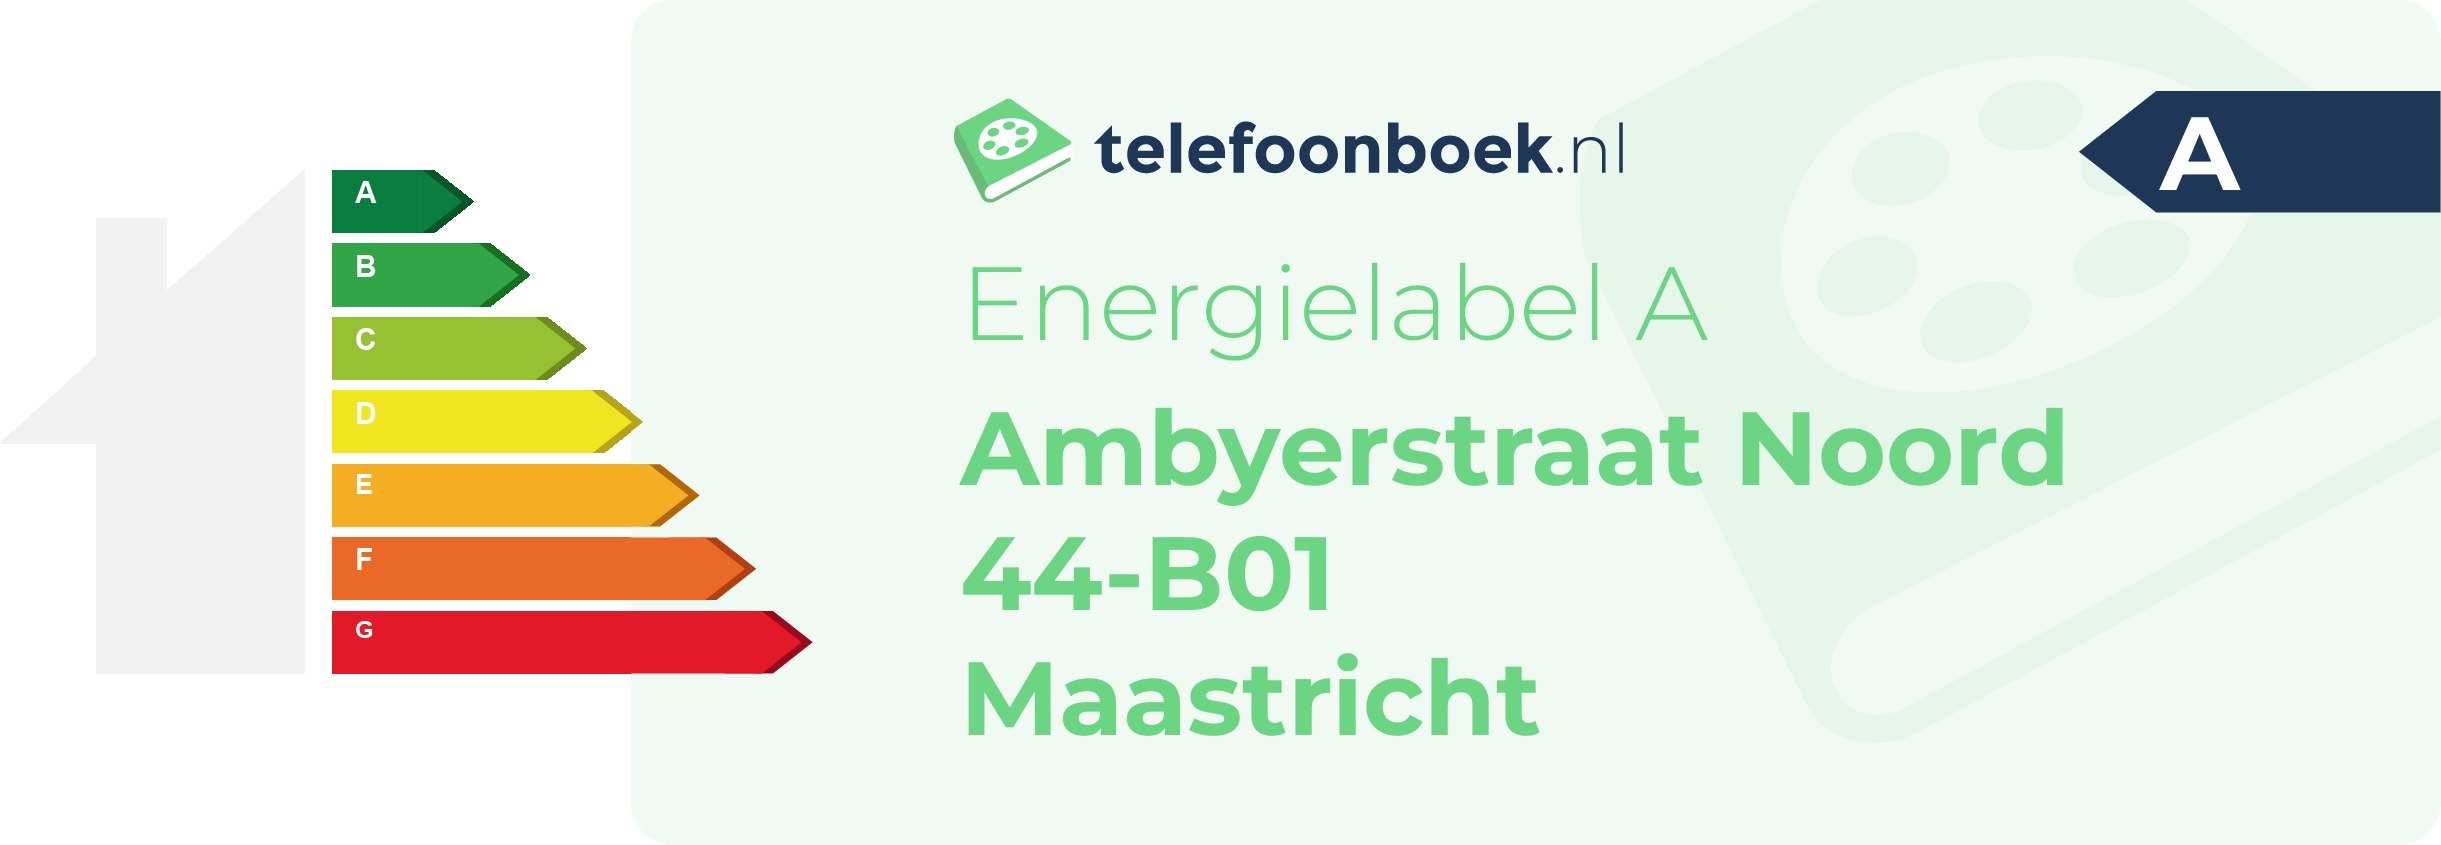 Energielabel Ambyerstraat Noord 44-B01 Maastricht